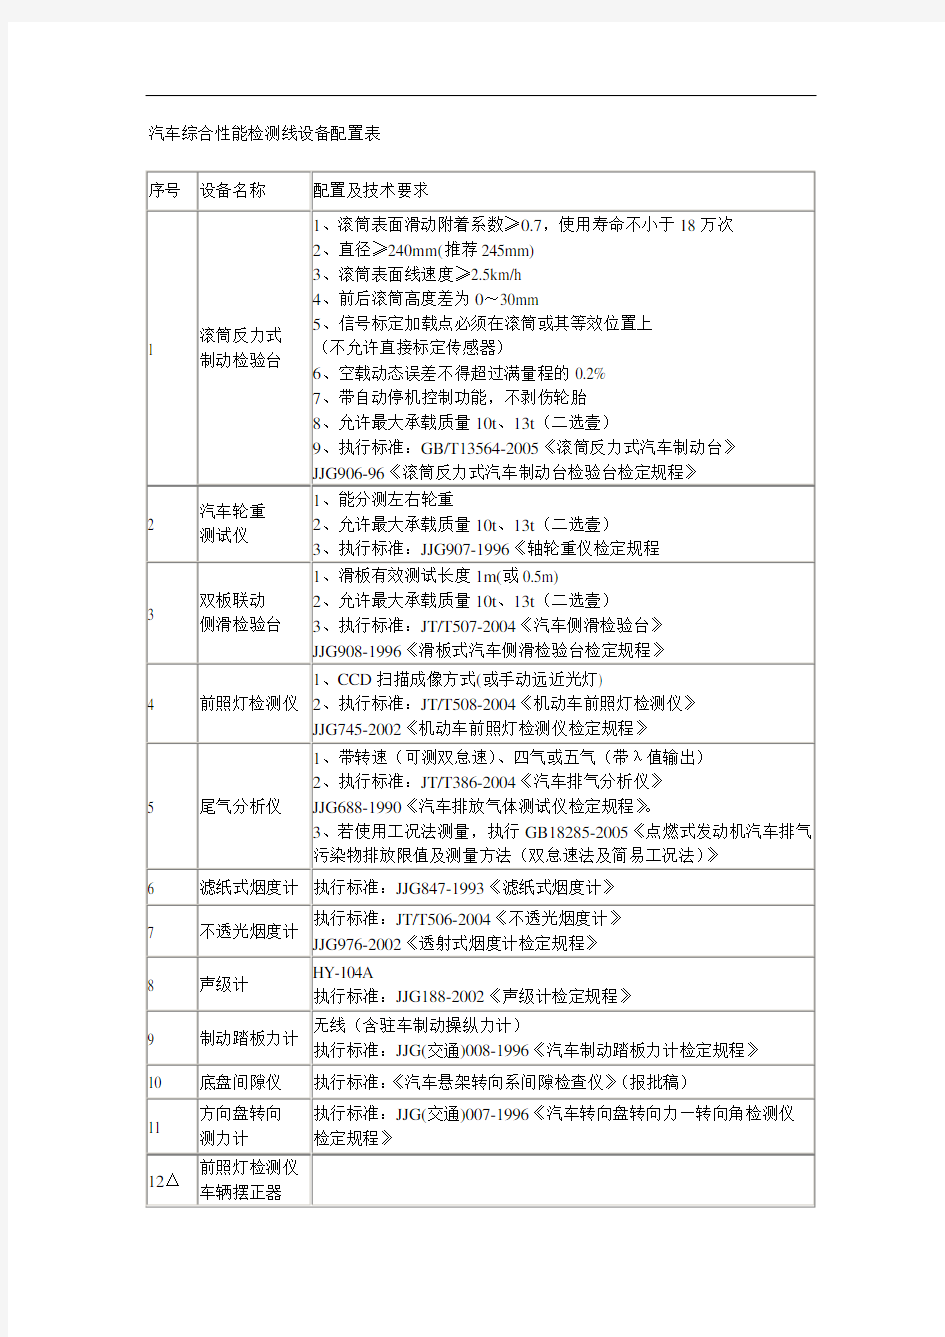 【汽车行业类】汽车综合性能检测线设备配置表